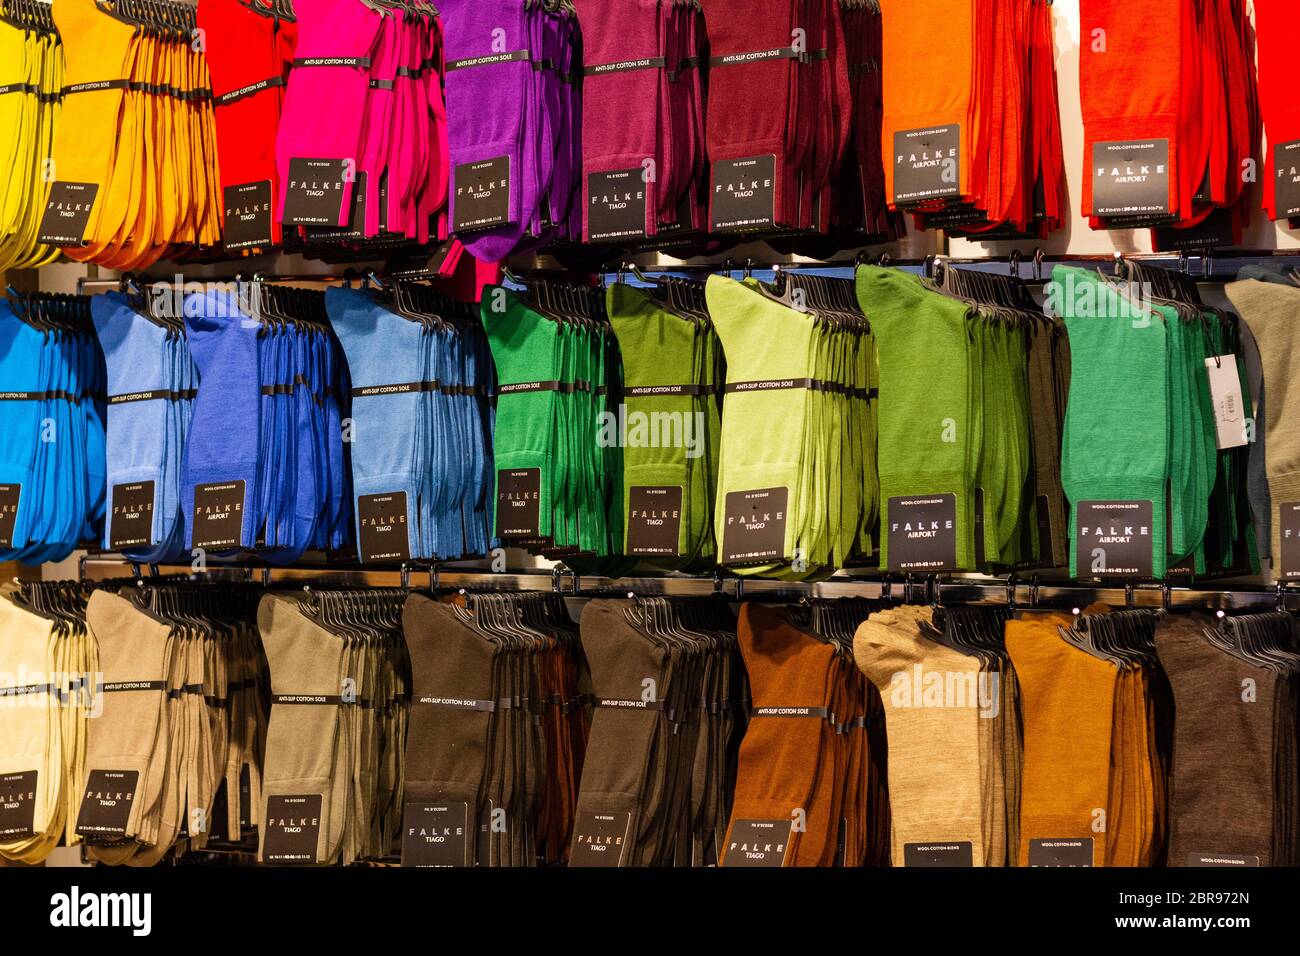 Schwechat, Österreich. 2020/02/06. Socken in verschiedenen Farben der Marke  Falke in einem Store am Flughafen Wien zu sehen Stockfotografie - Alamy